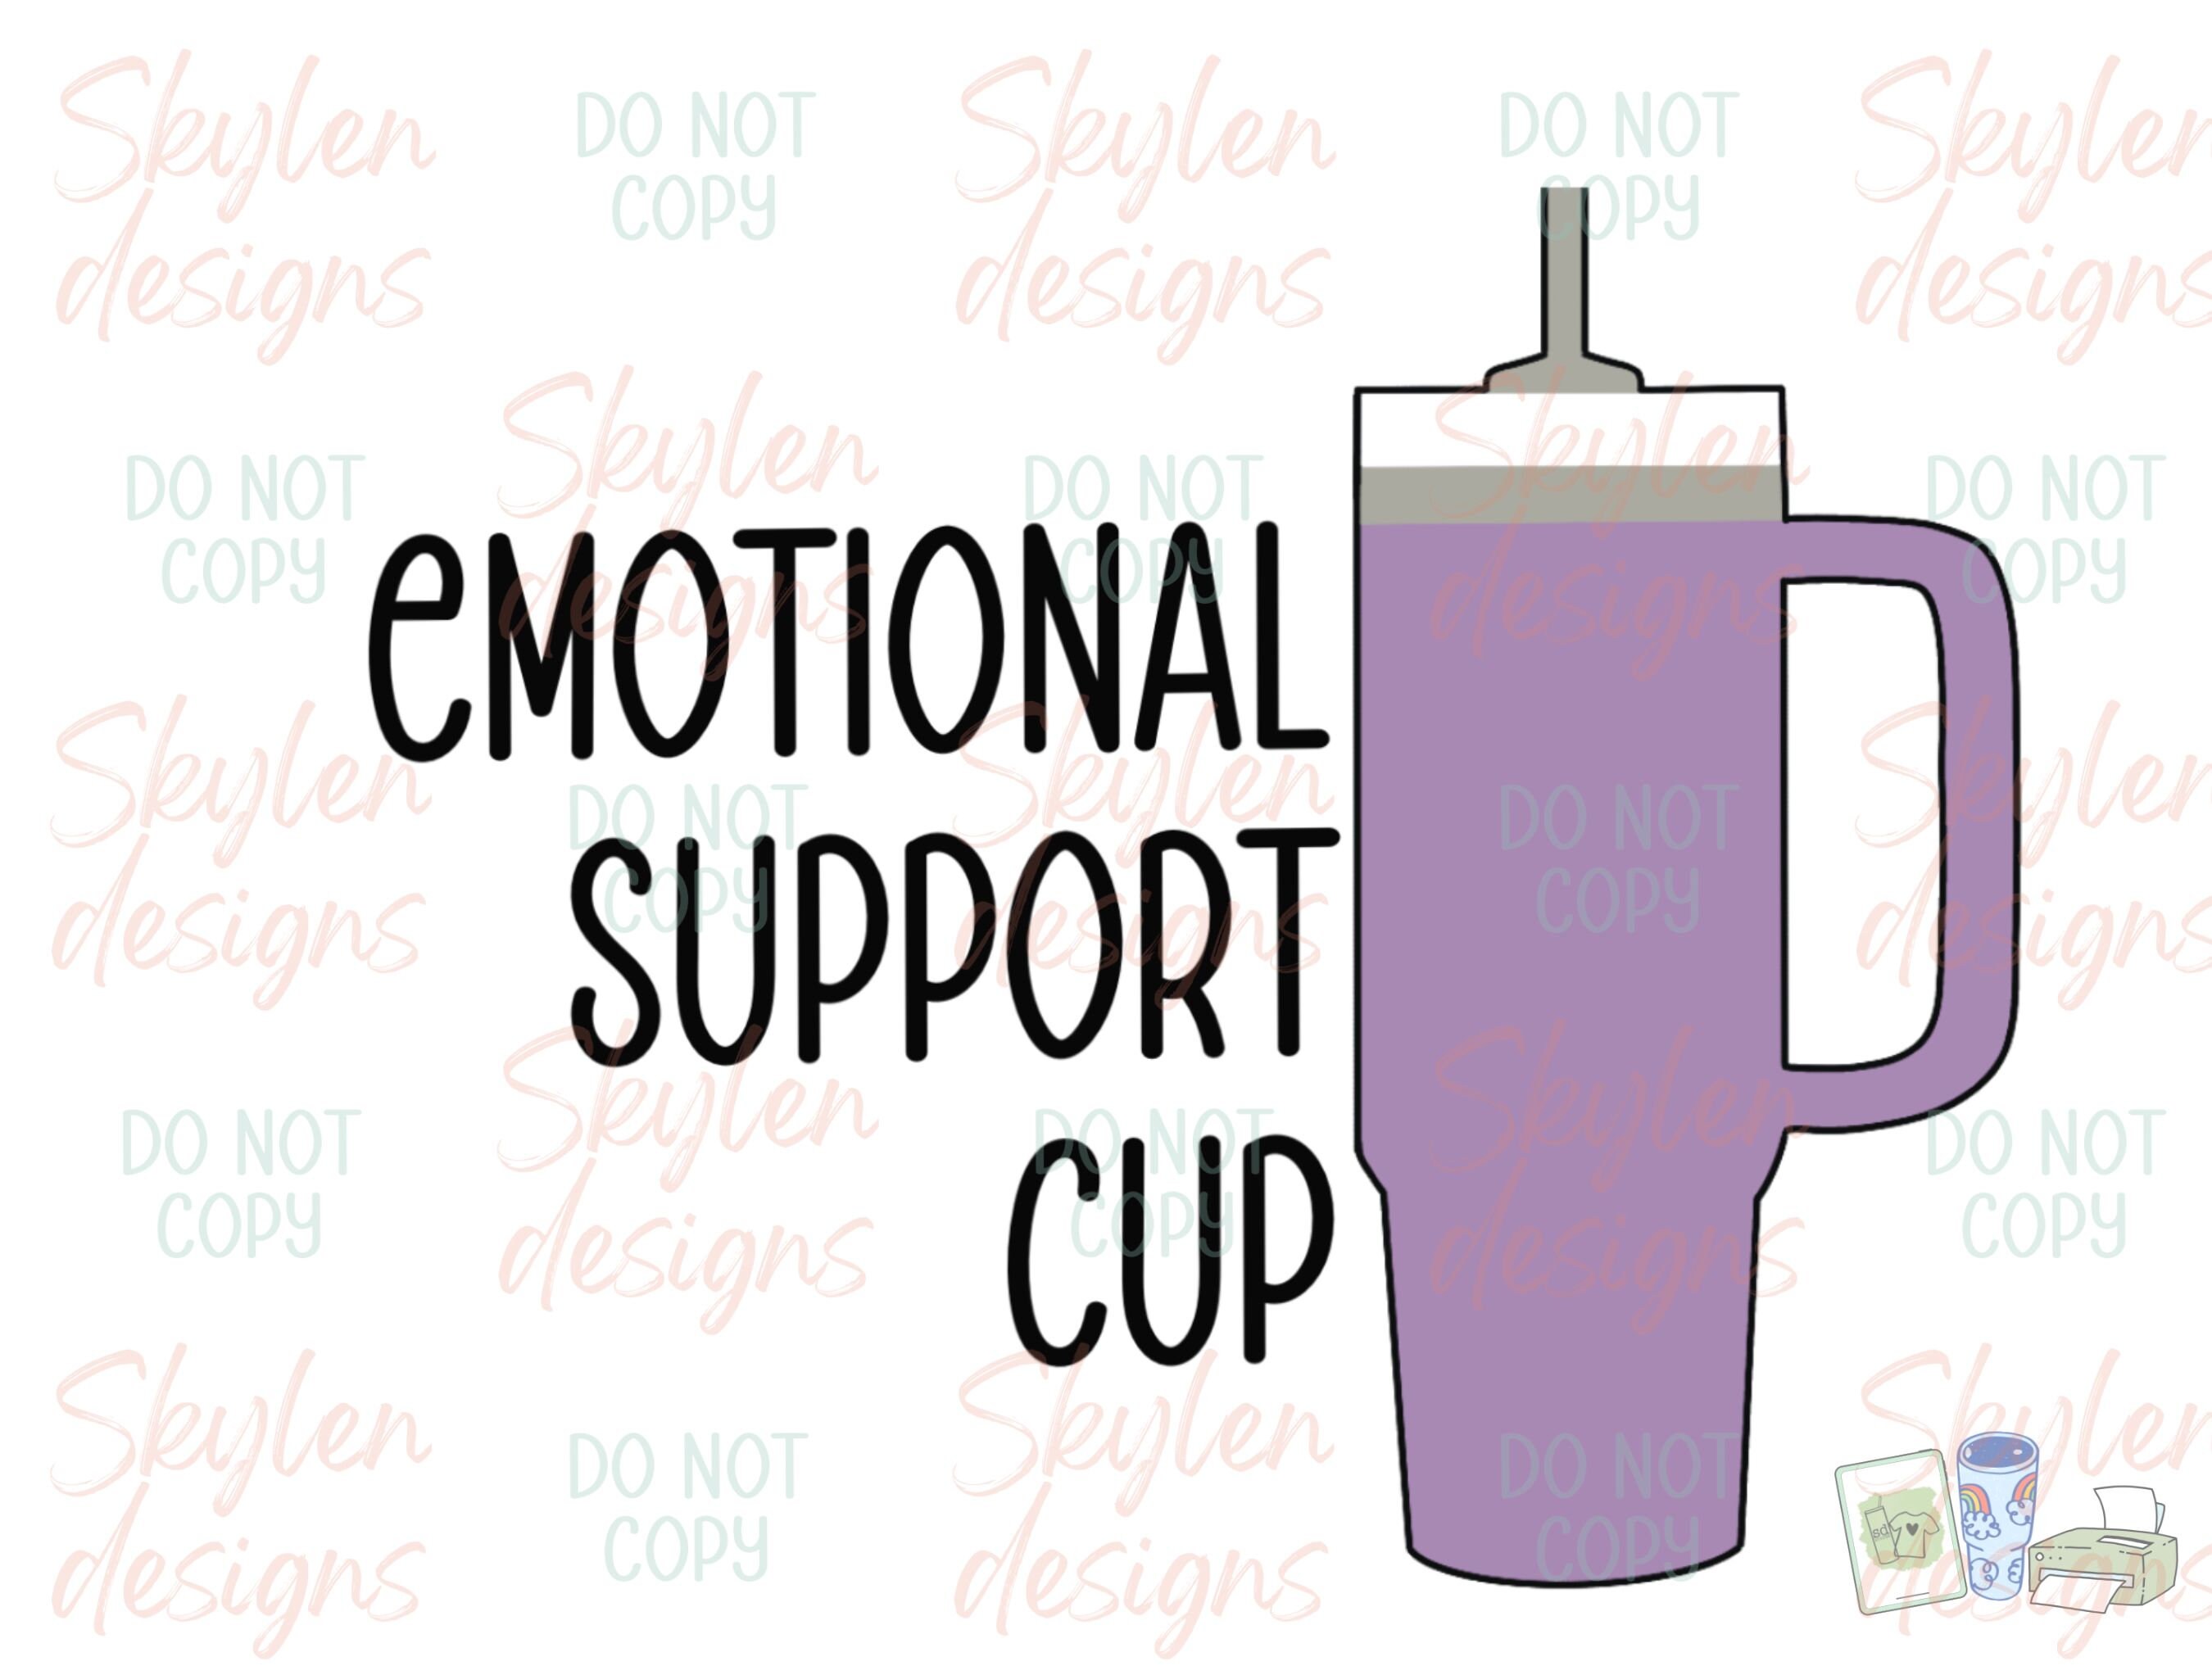 Emotional support Coworker - PNG Transparent Sublimation Des - Inspire  Uplift